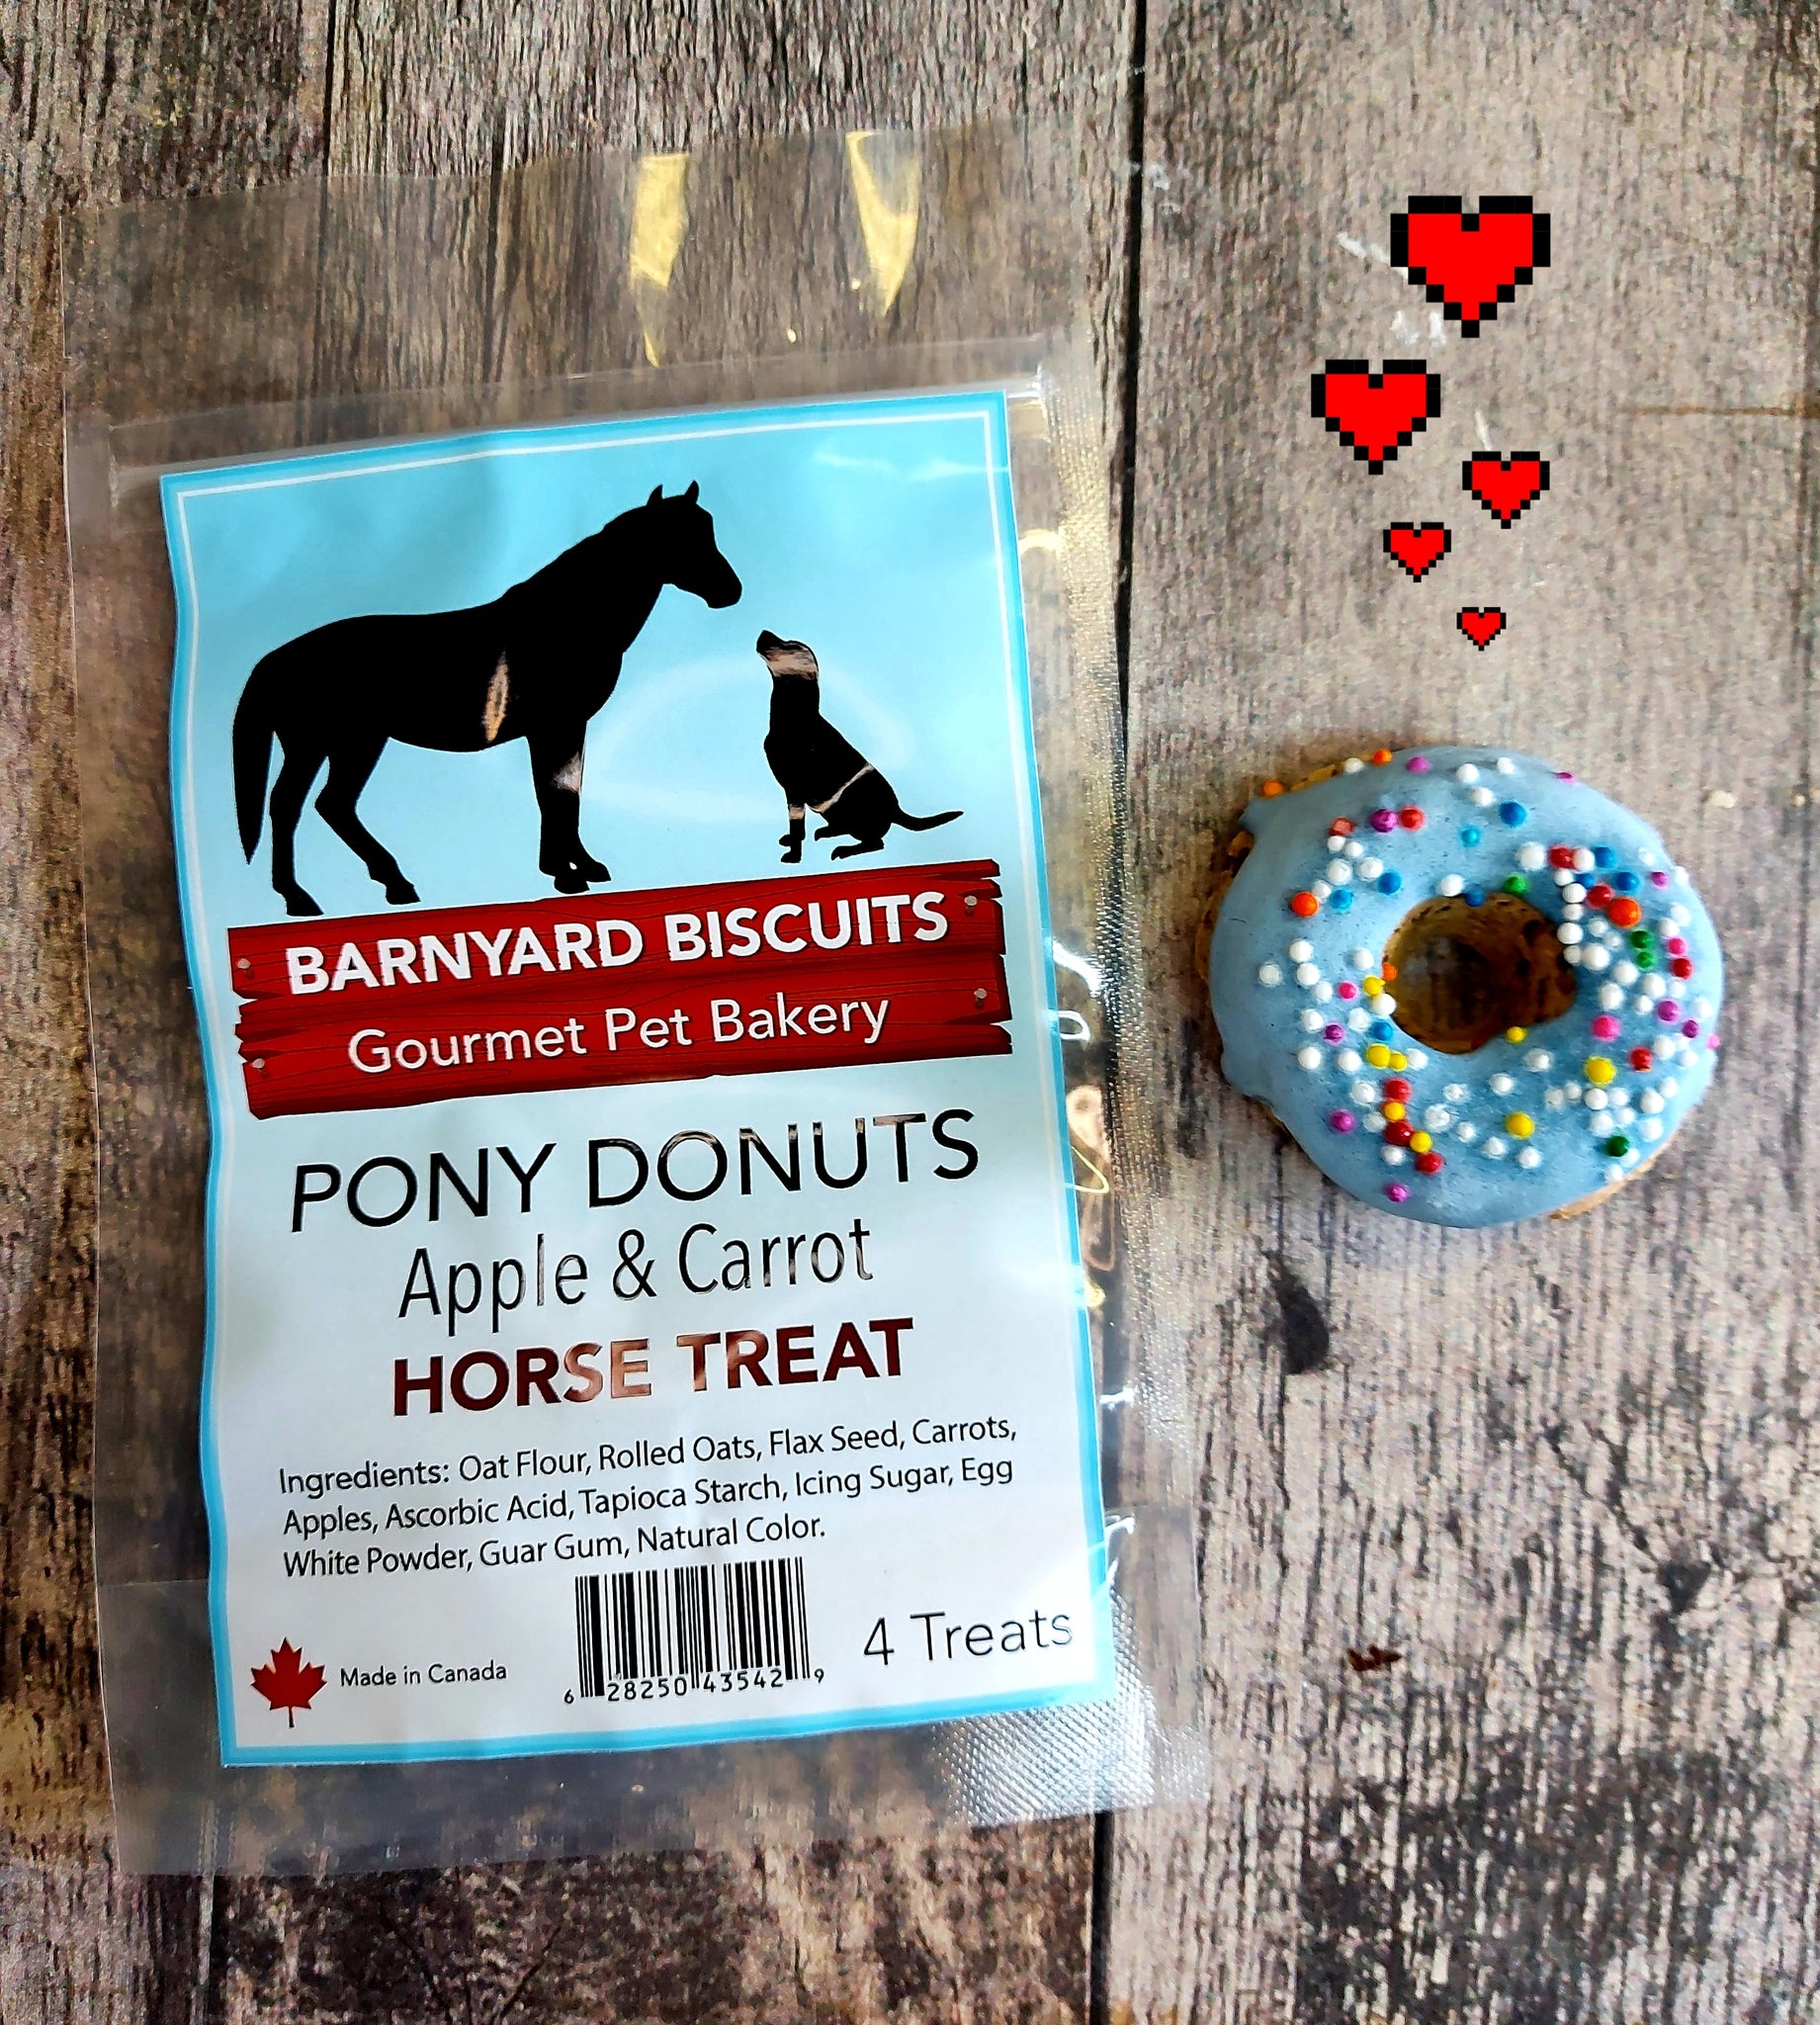 Pony Donuts